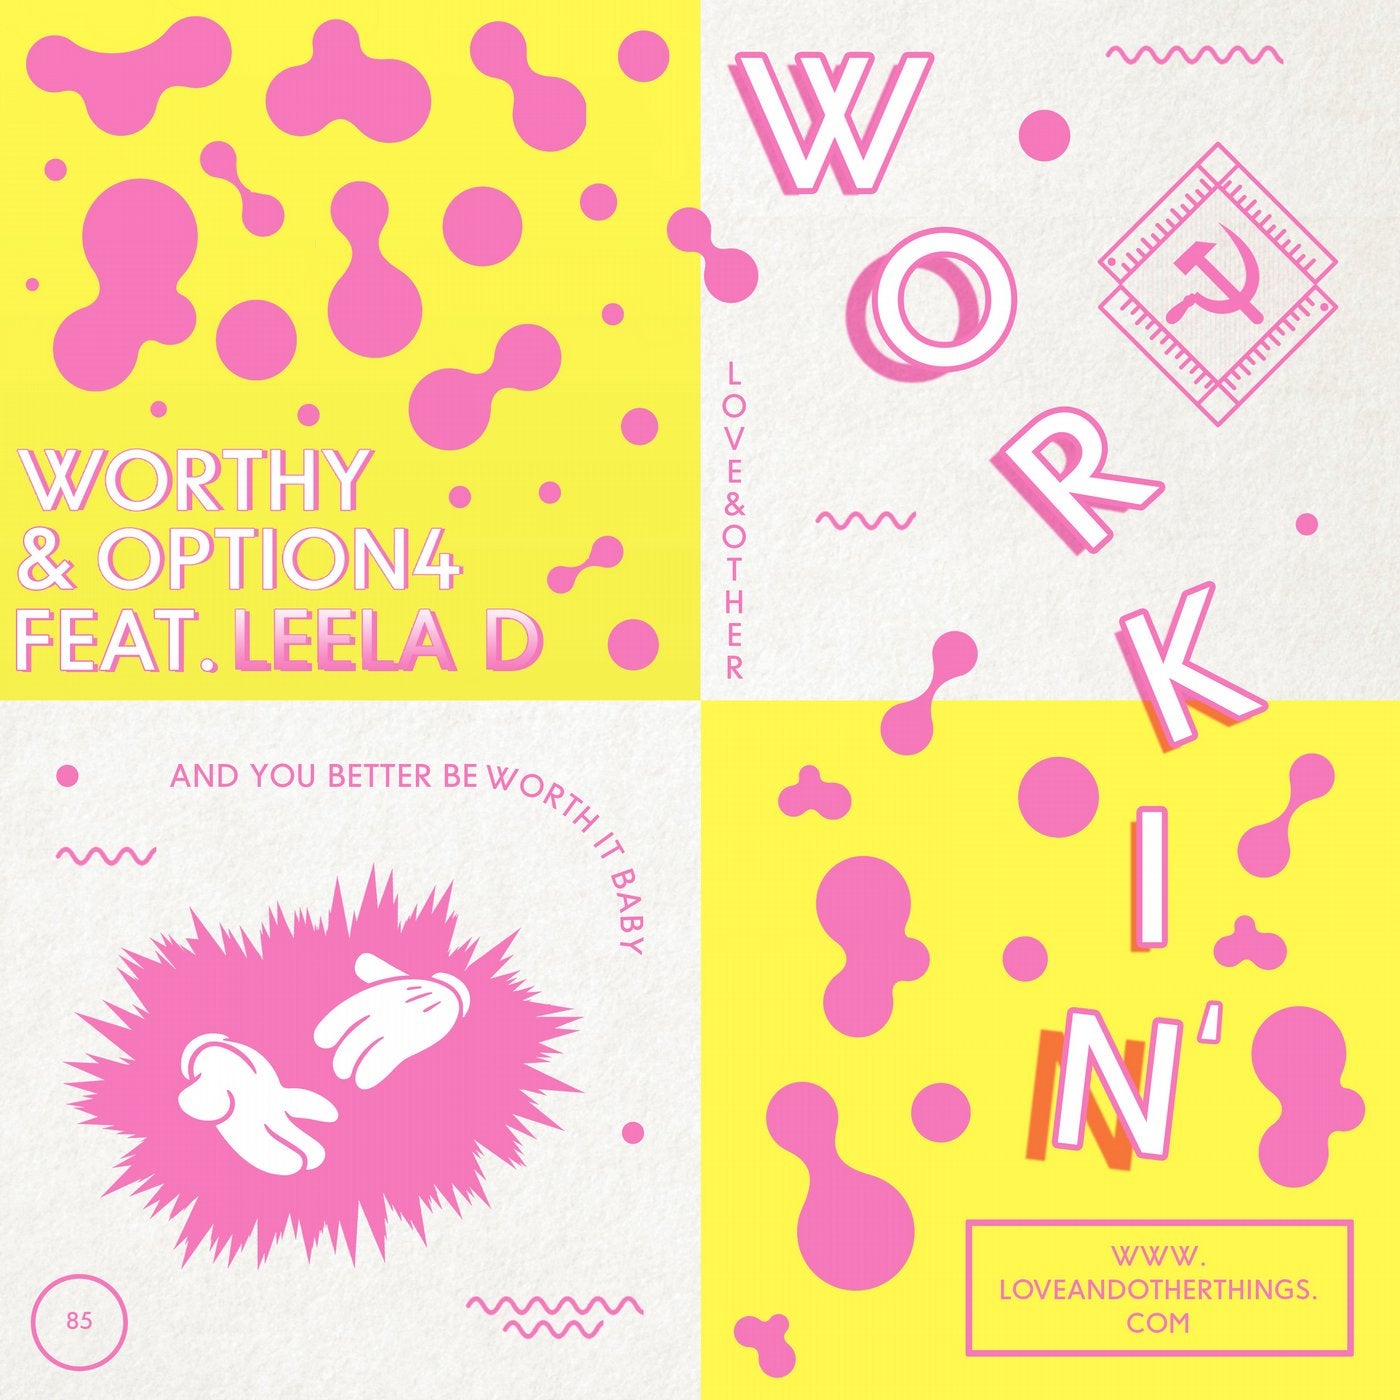 Workin' feat. Leela D